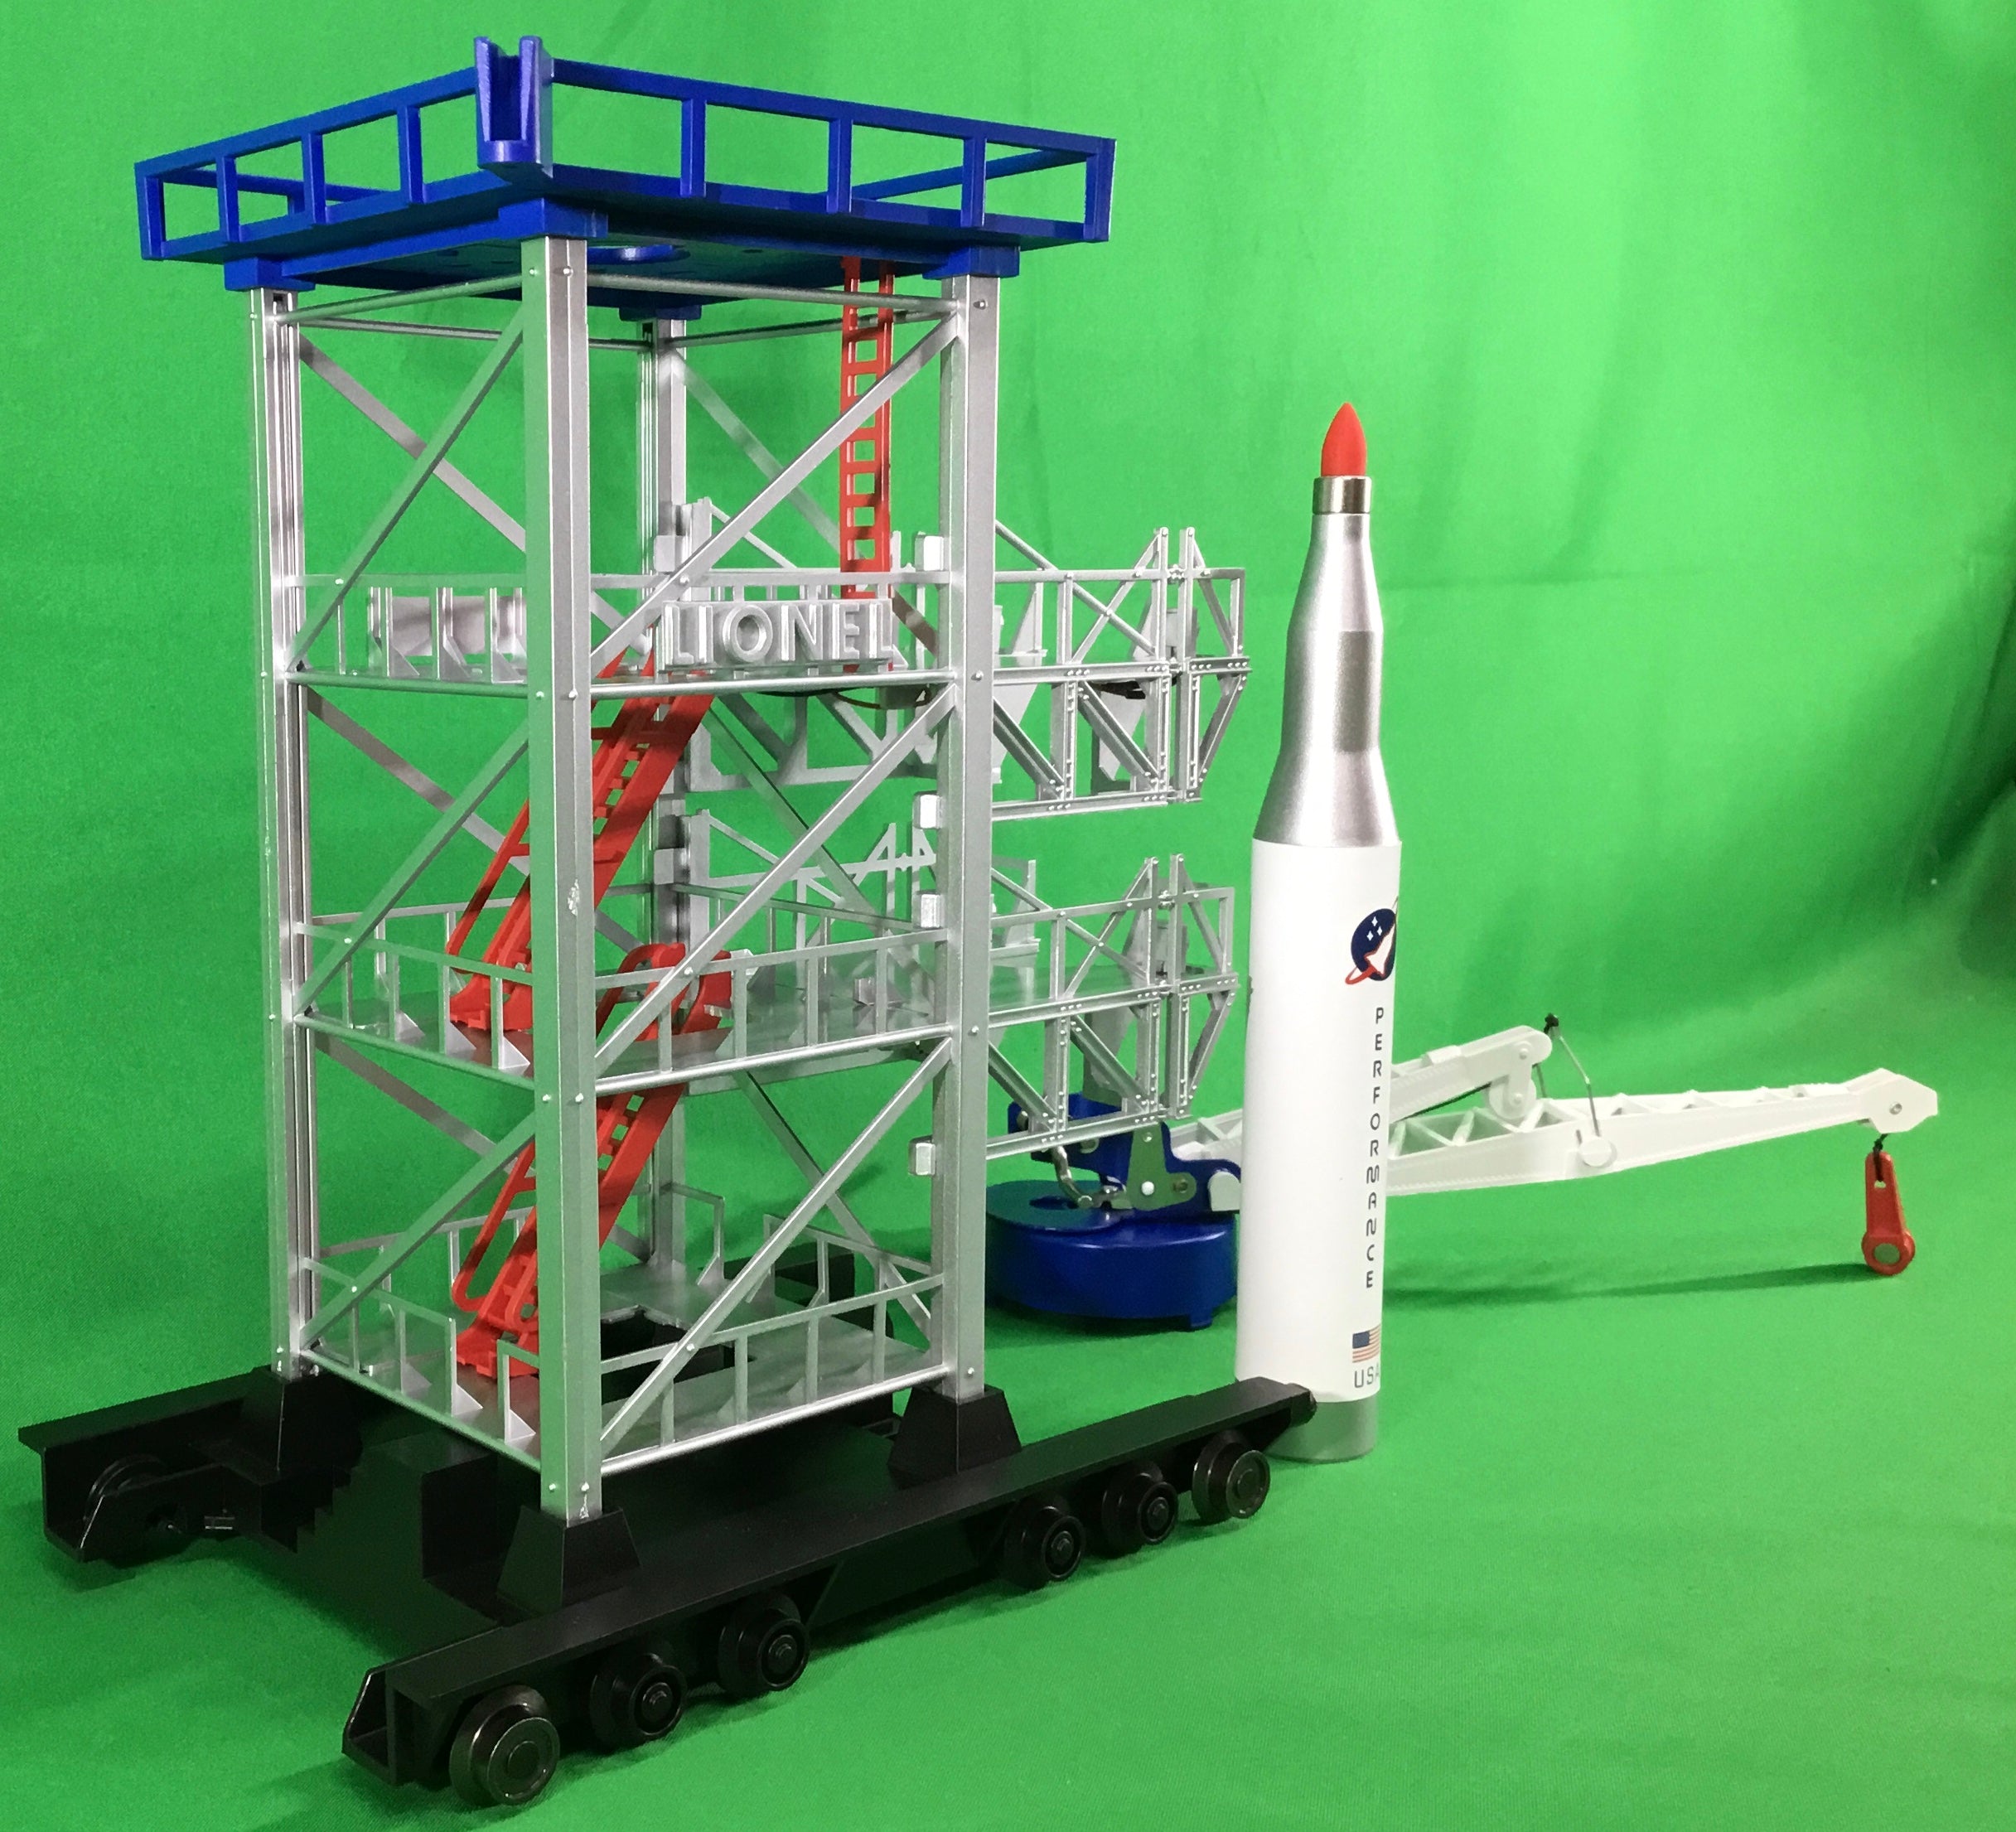 Lionel 2229300 - Rocket Launch Pad